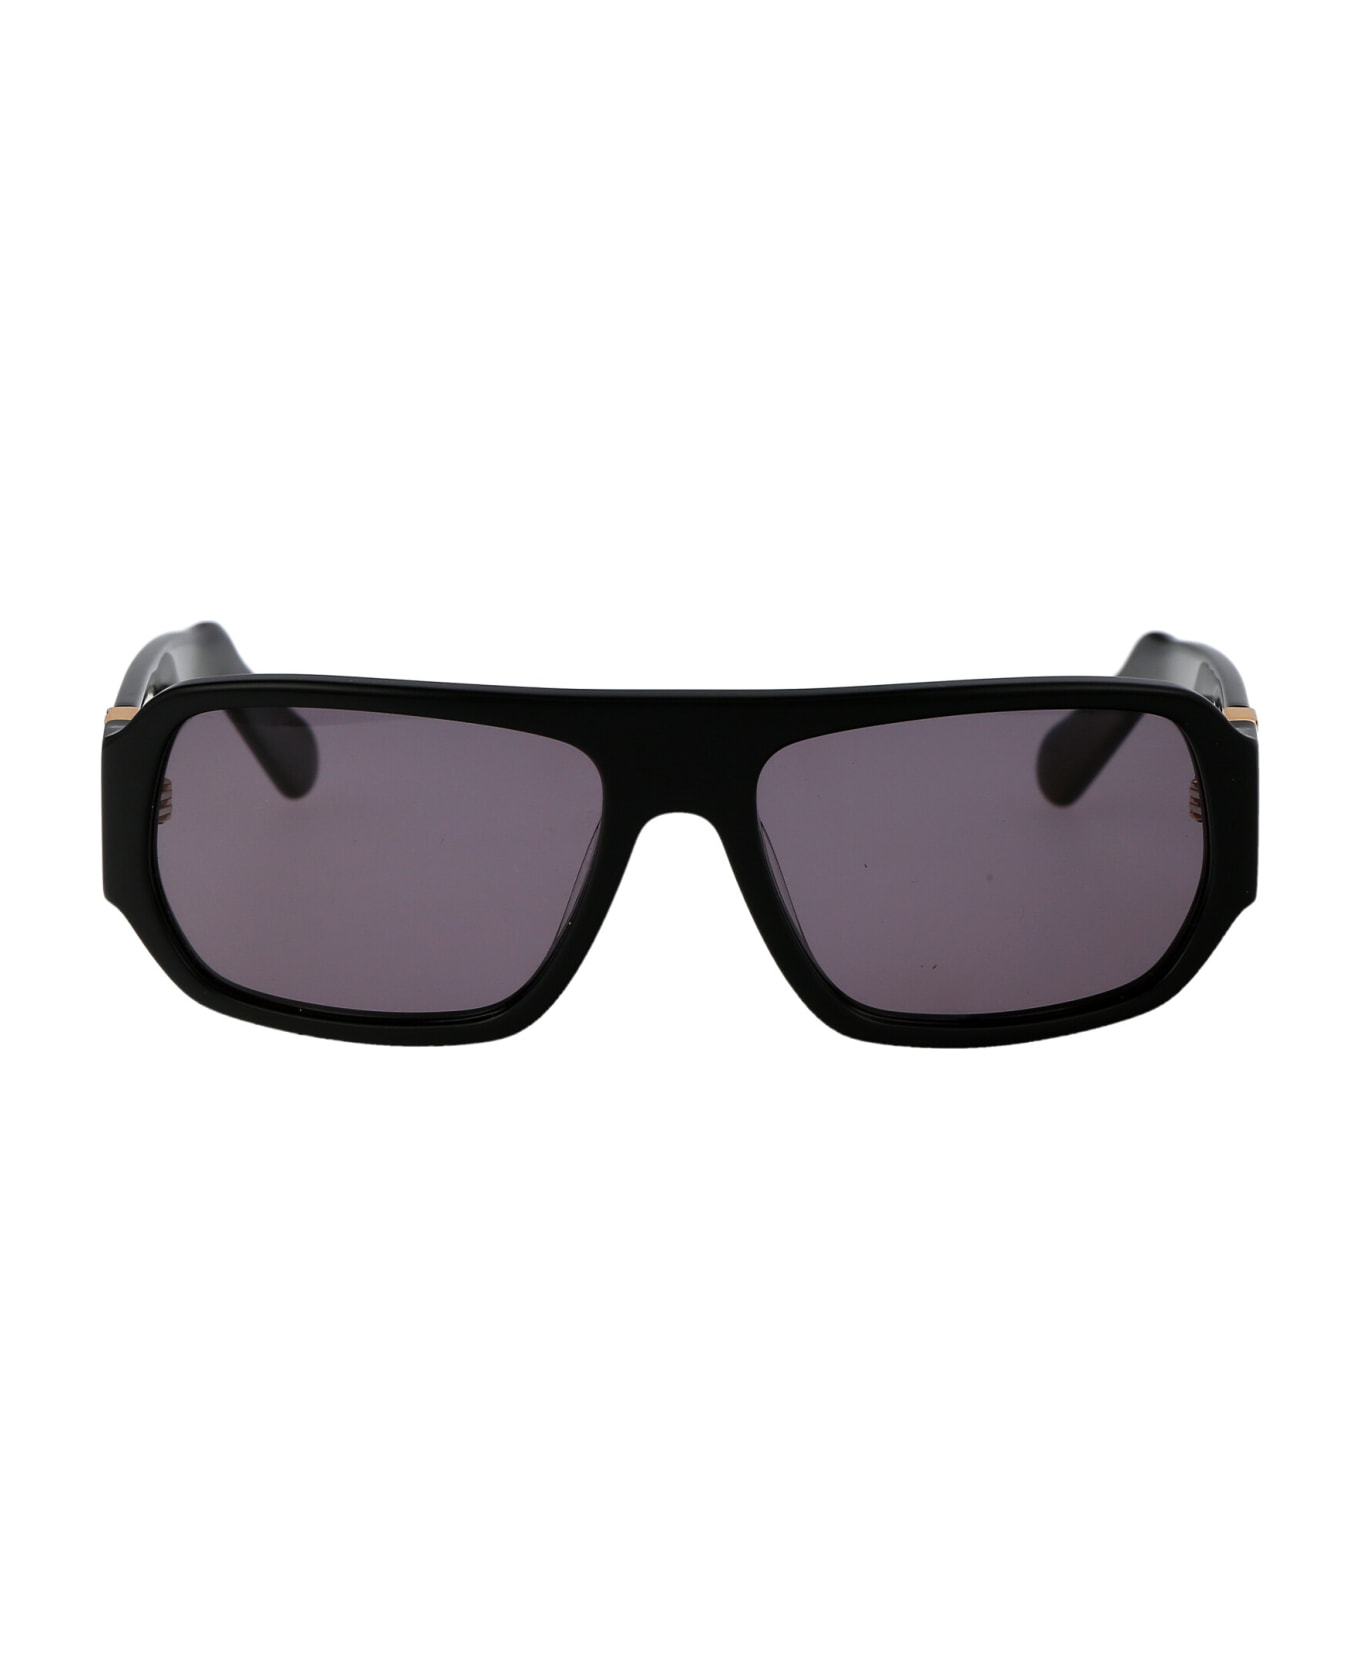 GCDS Gd0034 Sunglasses - 01A Nero Lucido/Fumo